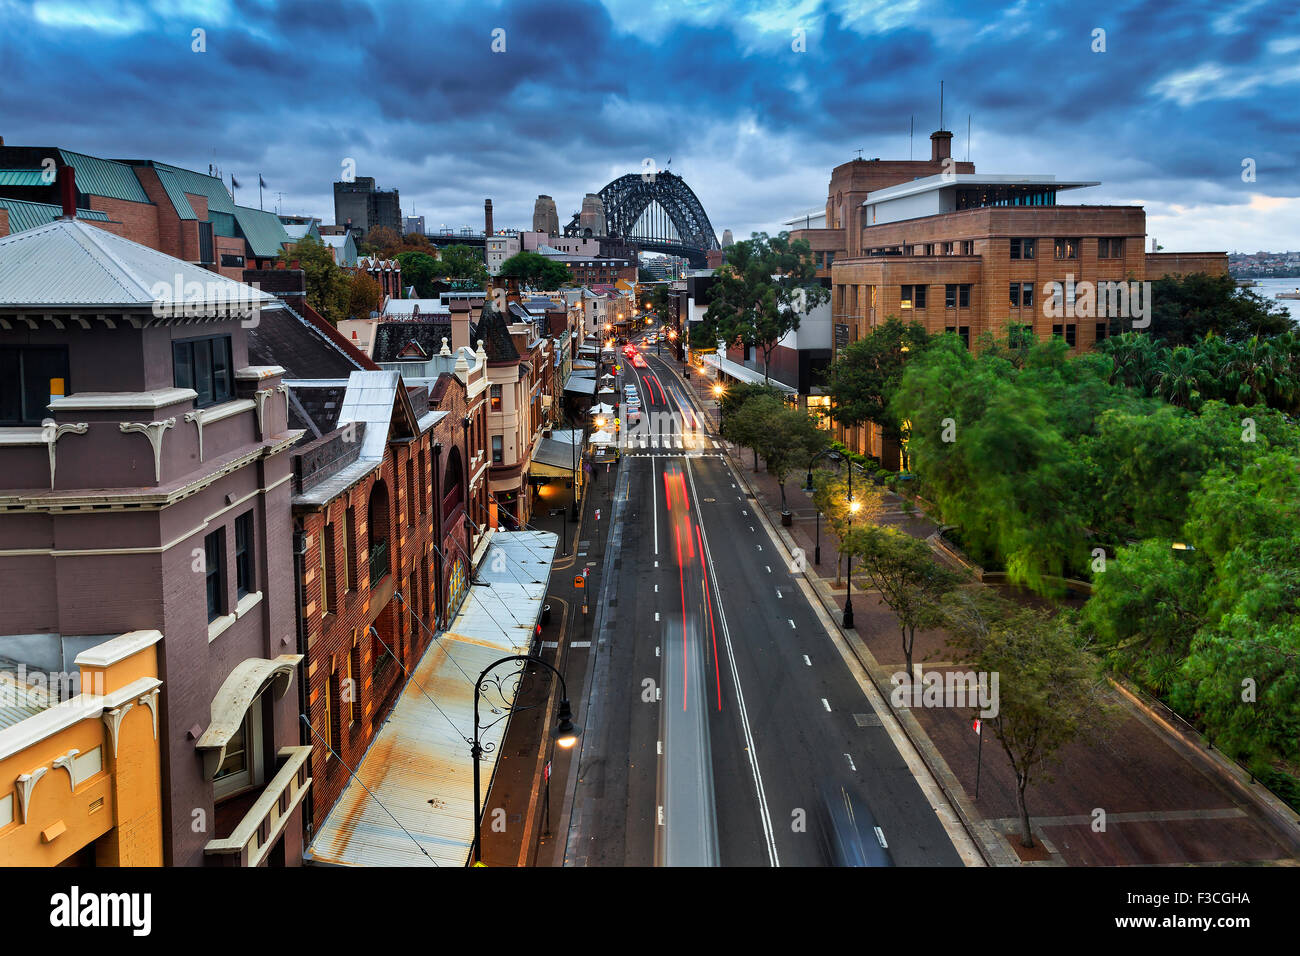 Sydney è la Roccia storico quartiere residenziale del borgo e al tramonto dalla suddetta posizione con le luci accese e Harbour Bridge Foto Stock